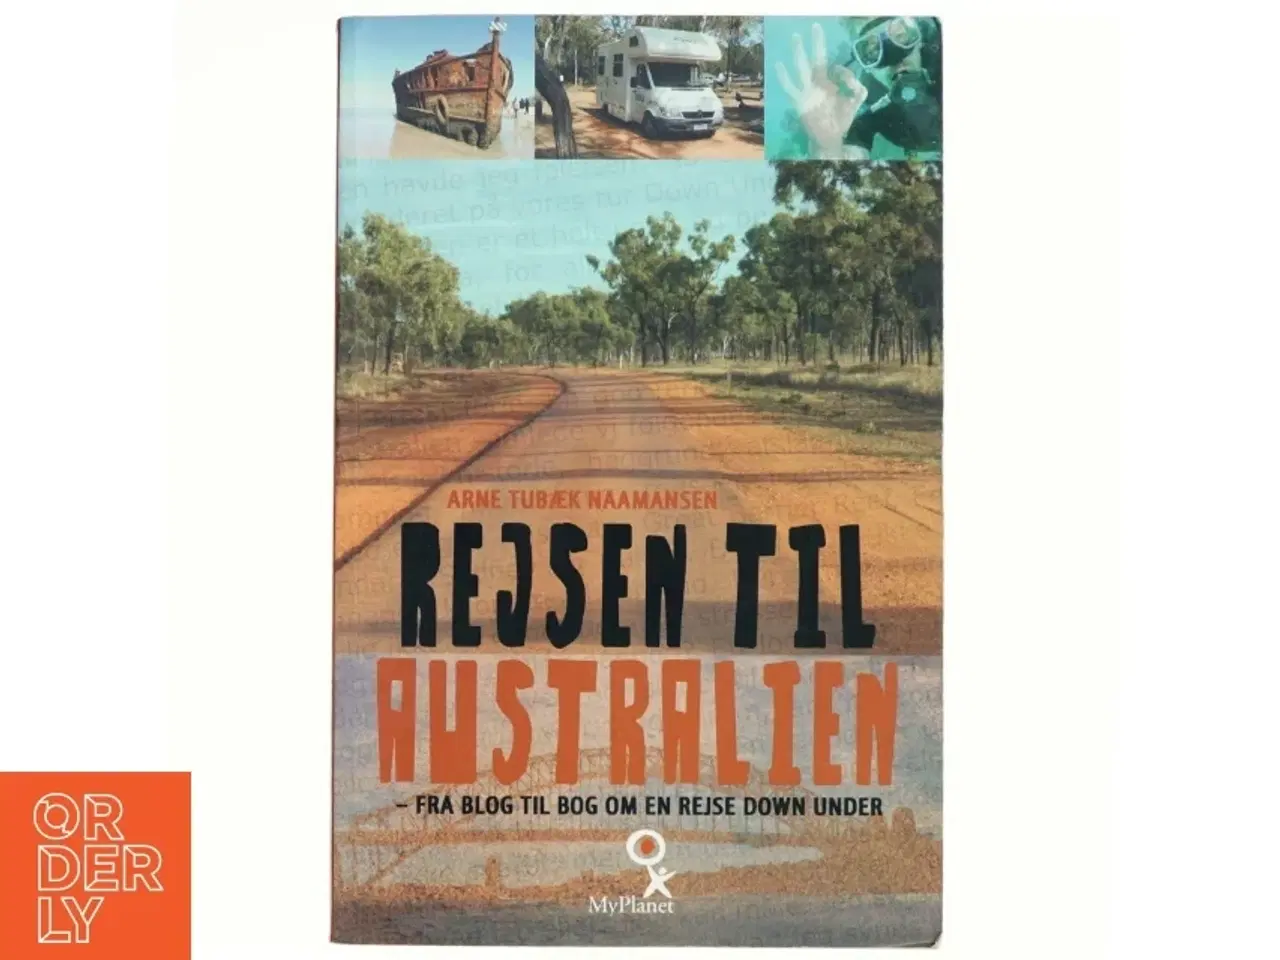 Billede 1 - Rejsen til Australien : fra blog til bog om en rejse down under af Arne Tubæk Naamansen (Bog)